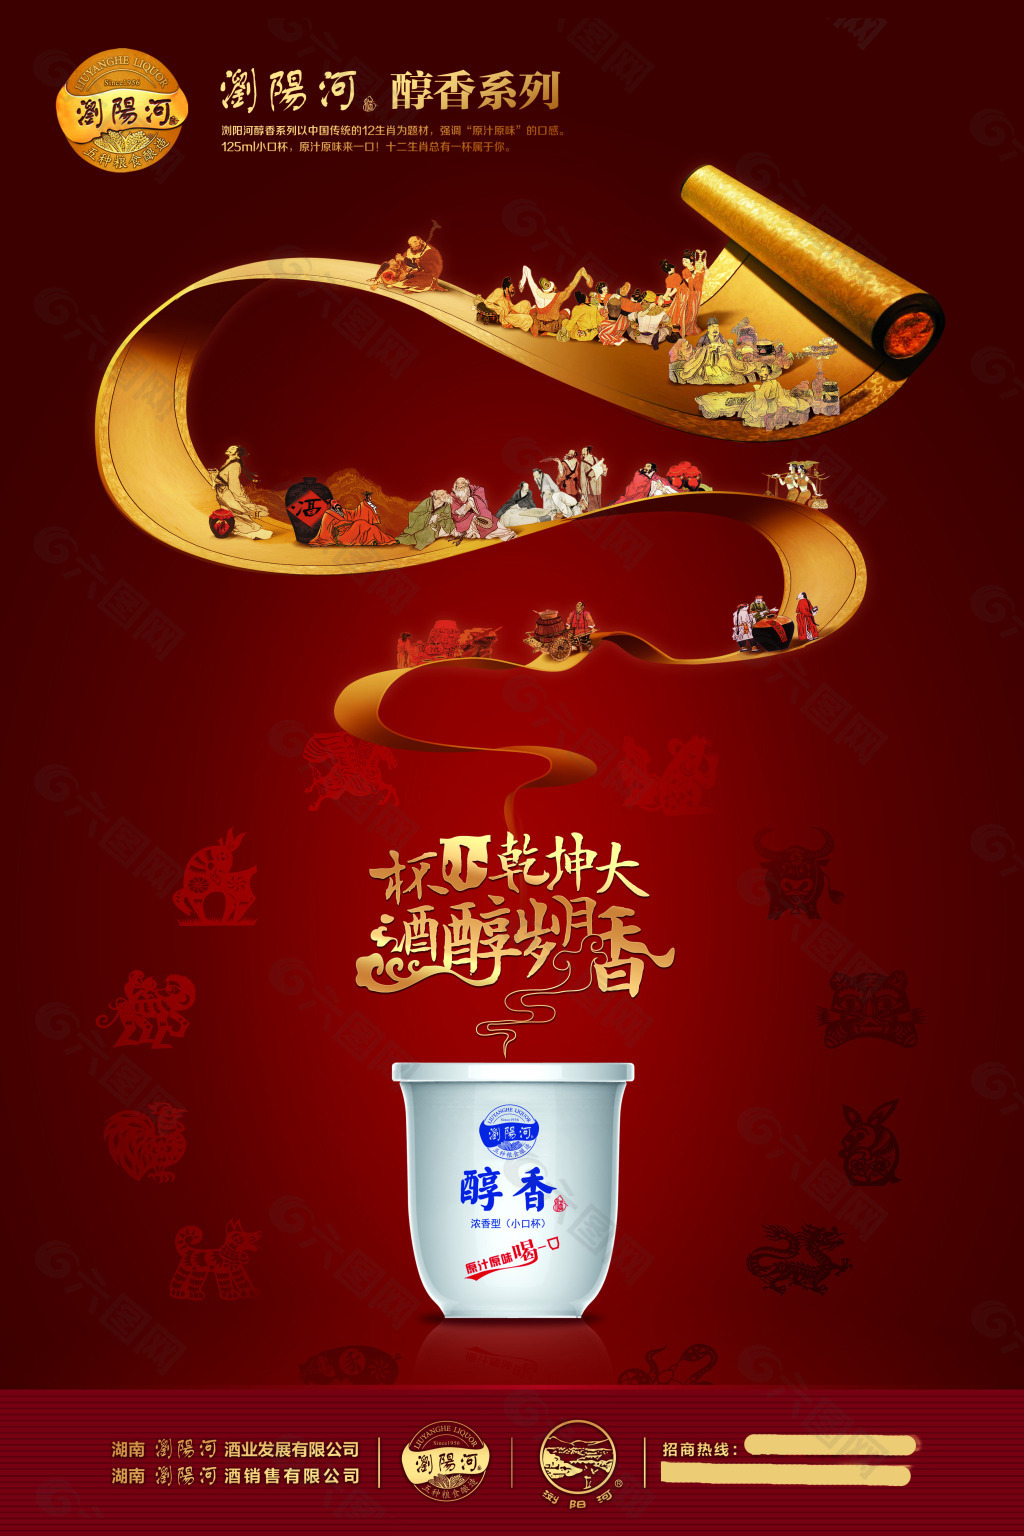 浏阳河酒广告图片